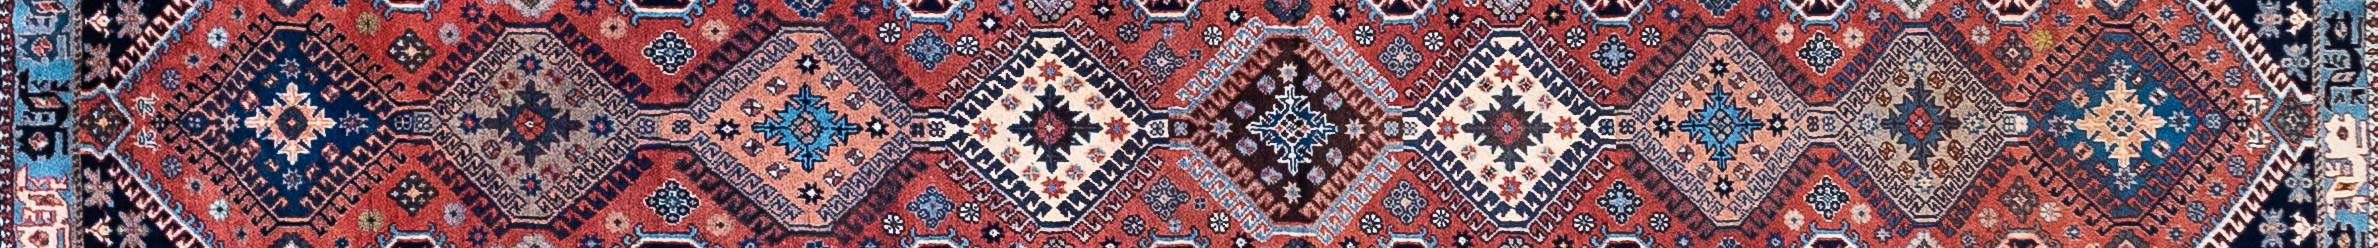 Yalameh Persian Carpet Rug N1Carpet Canada Montreal Tapis Persan 1150